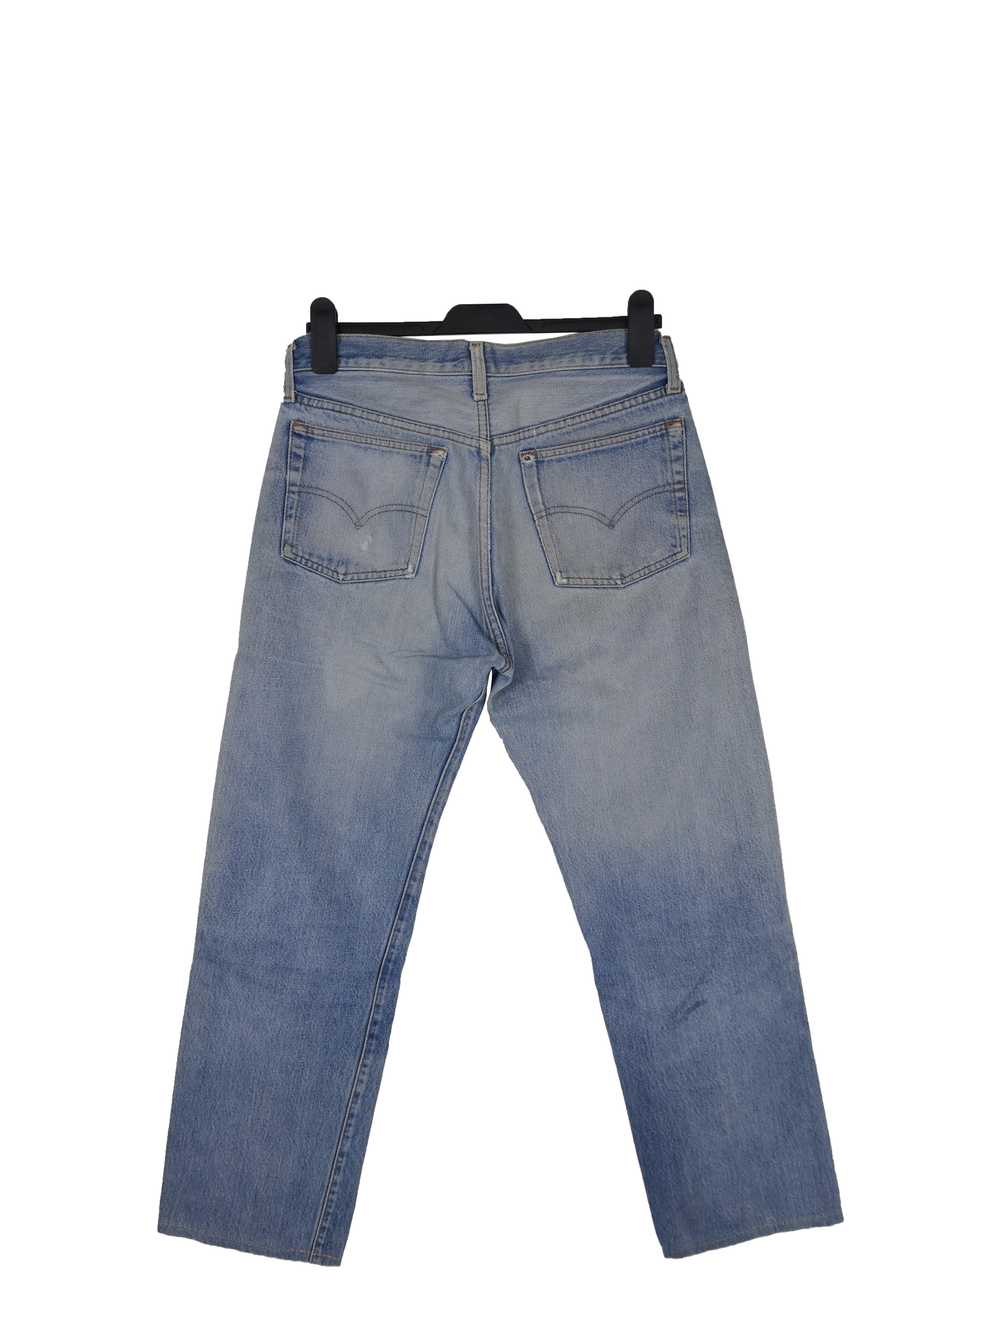 Vintage - Levis 501 Jeans Distressed Levis 501 De… - image 2